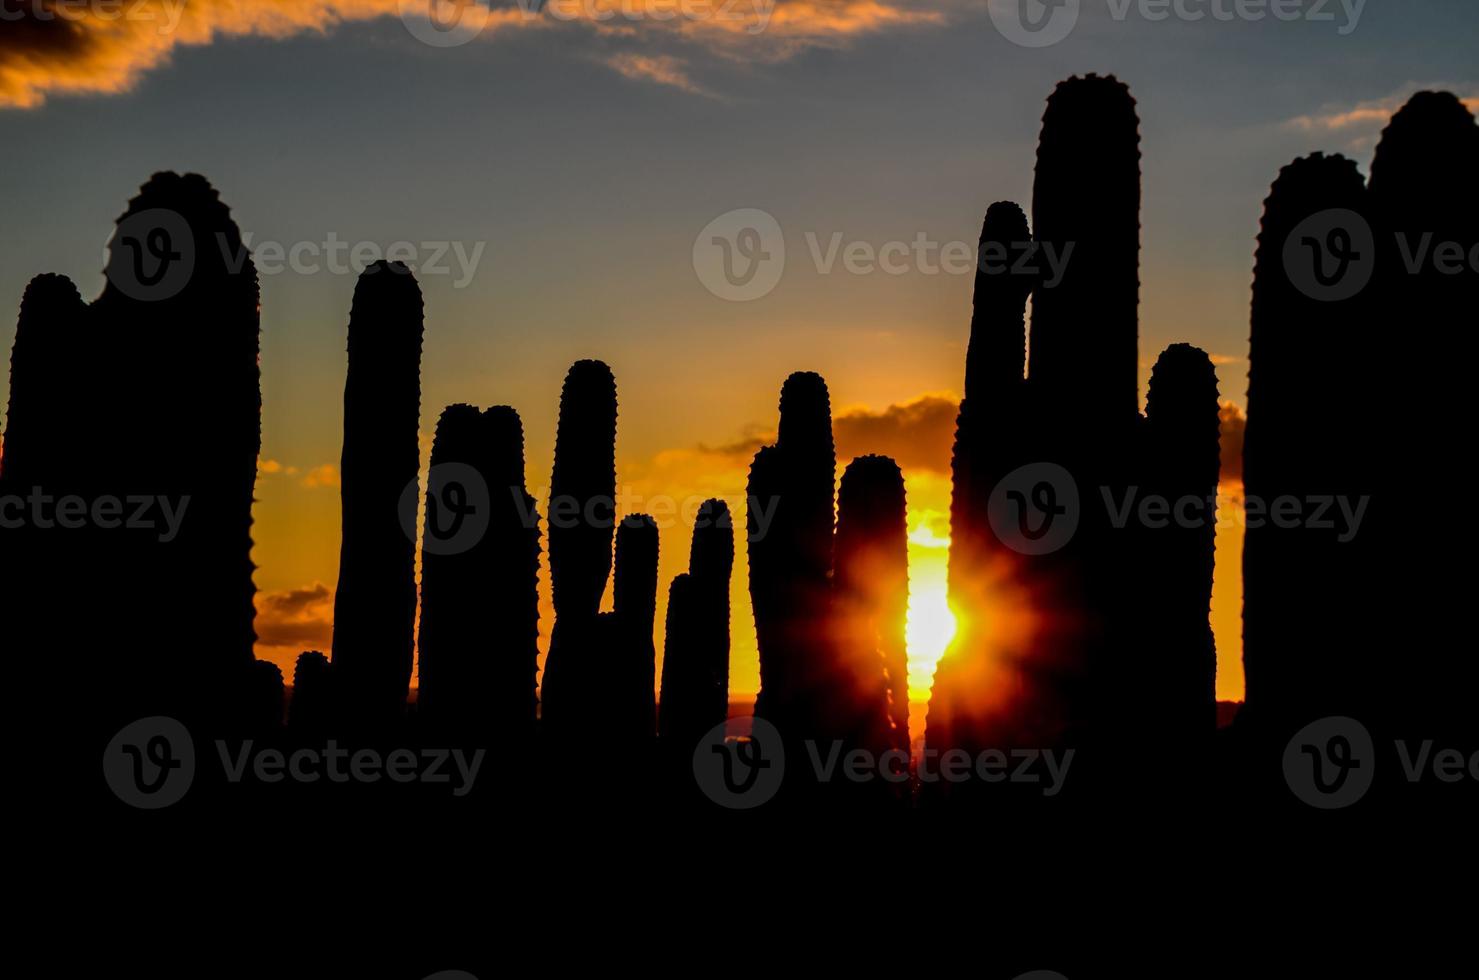 vista del desierto con cactus foto